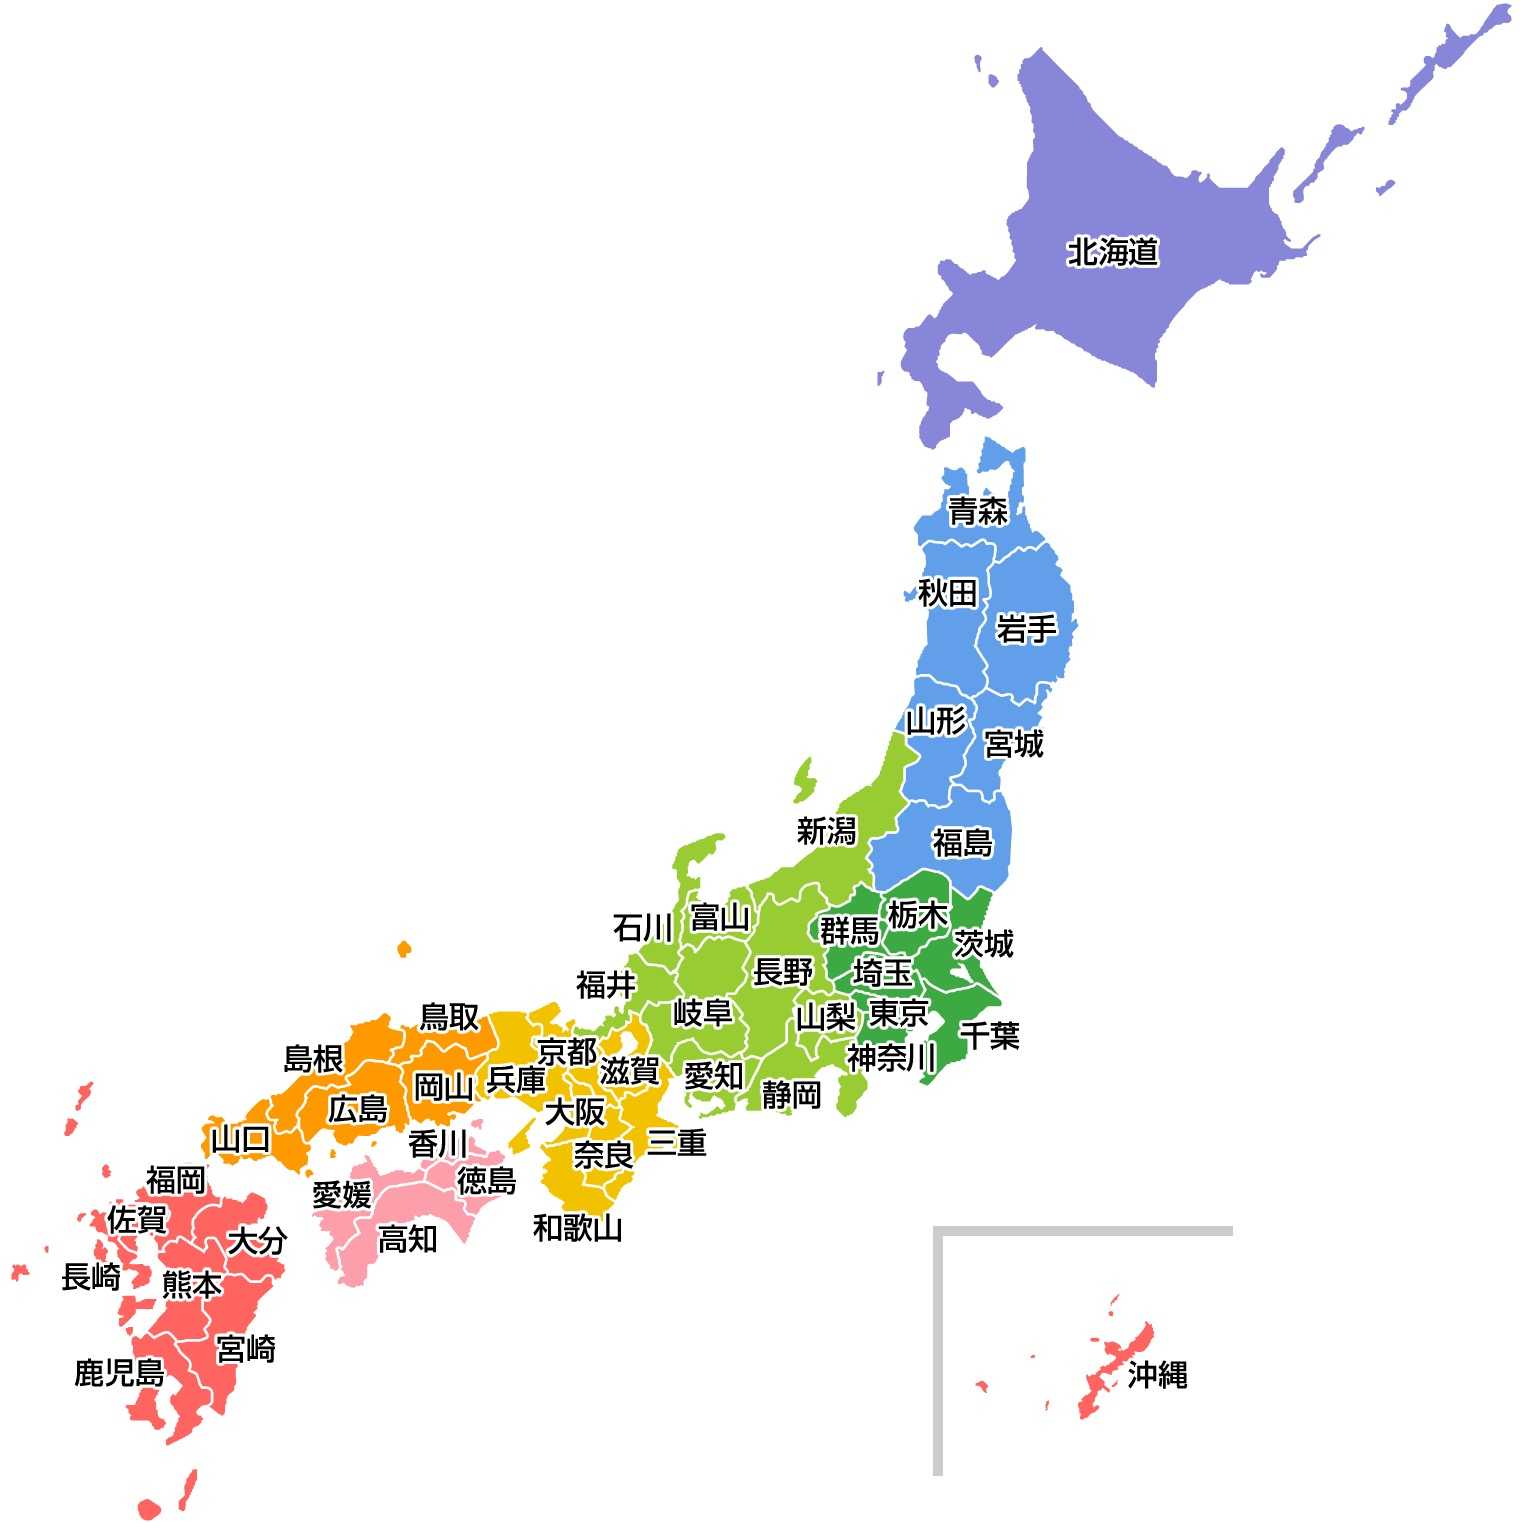 一 日本的省级行政单位即人们熟知的47个都道府县(とどうふけん)